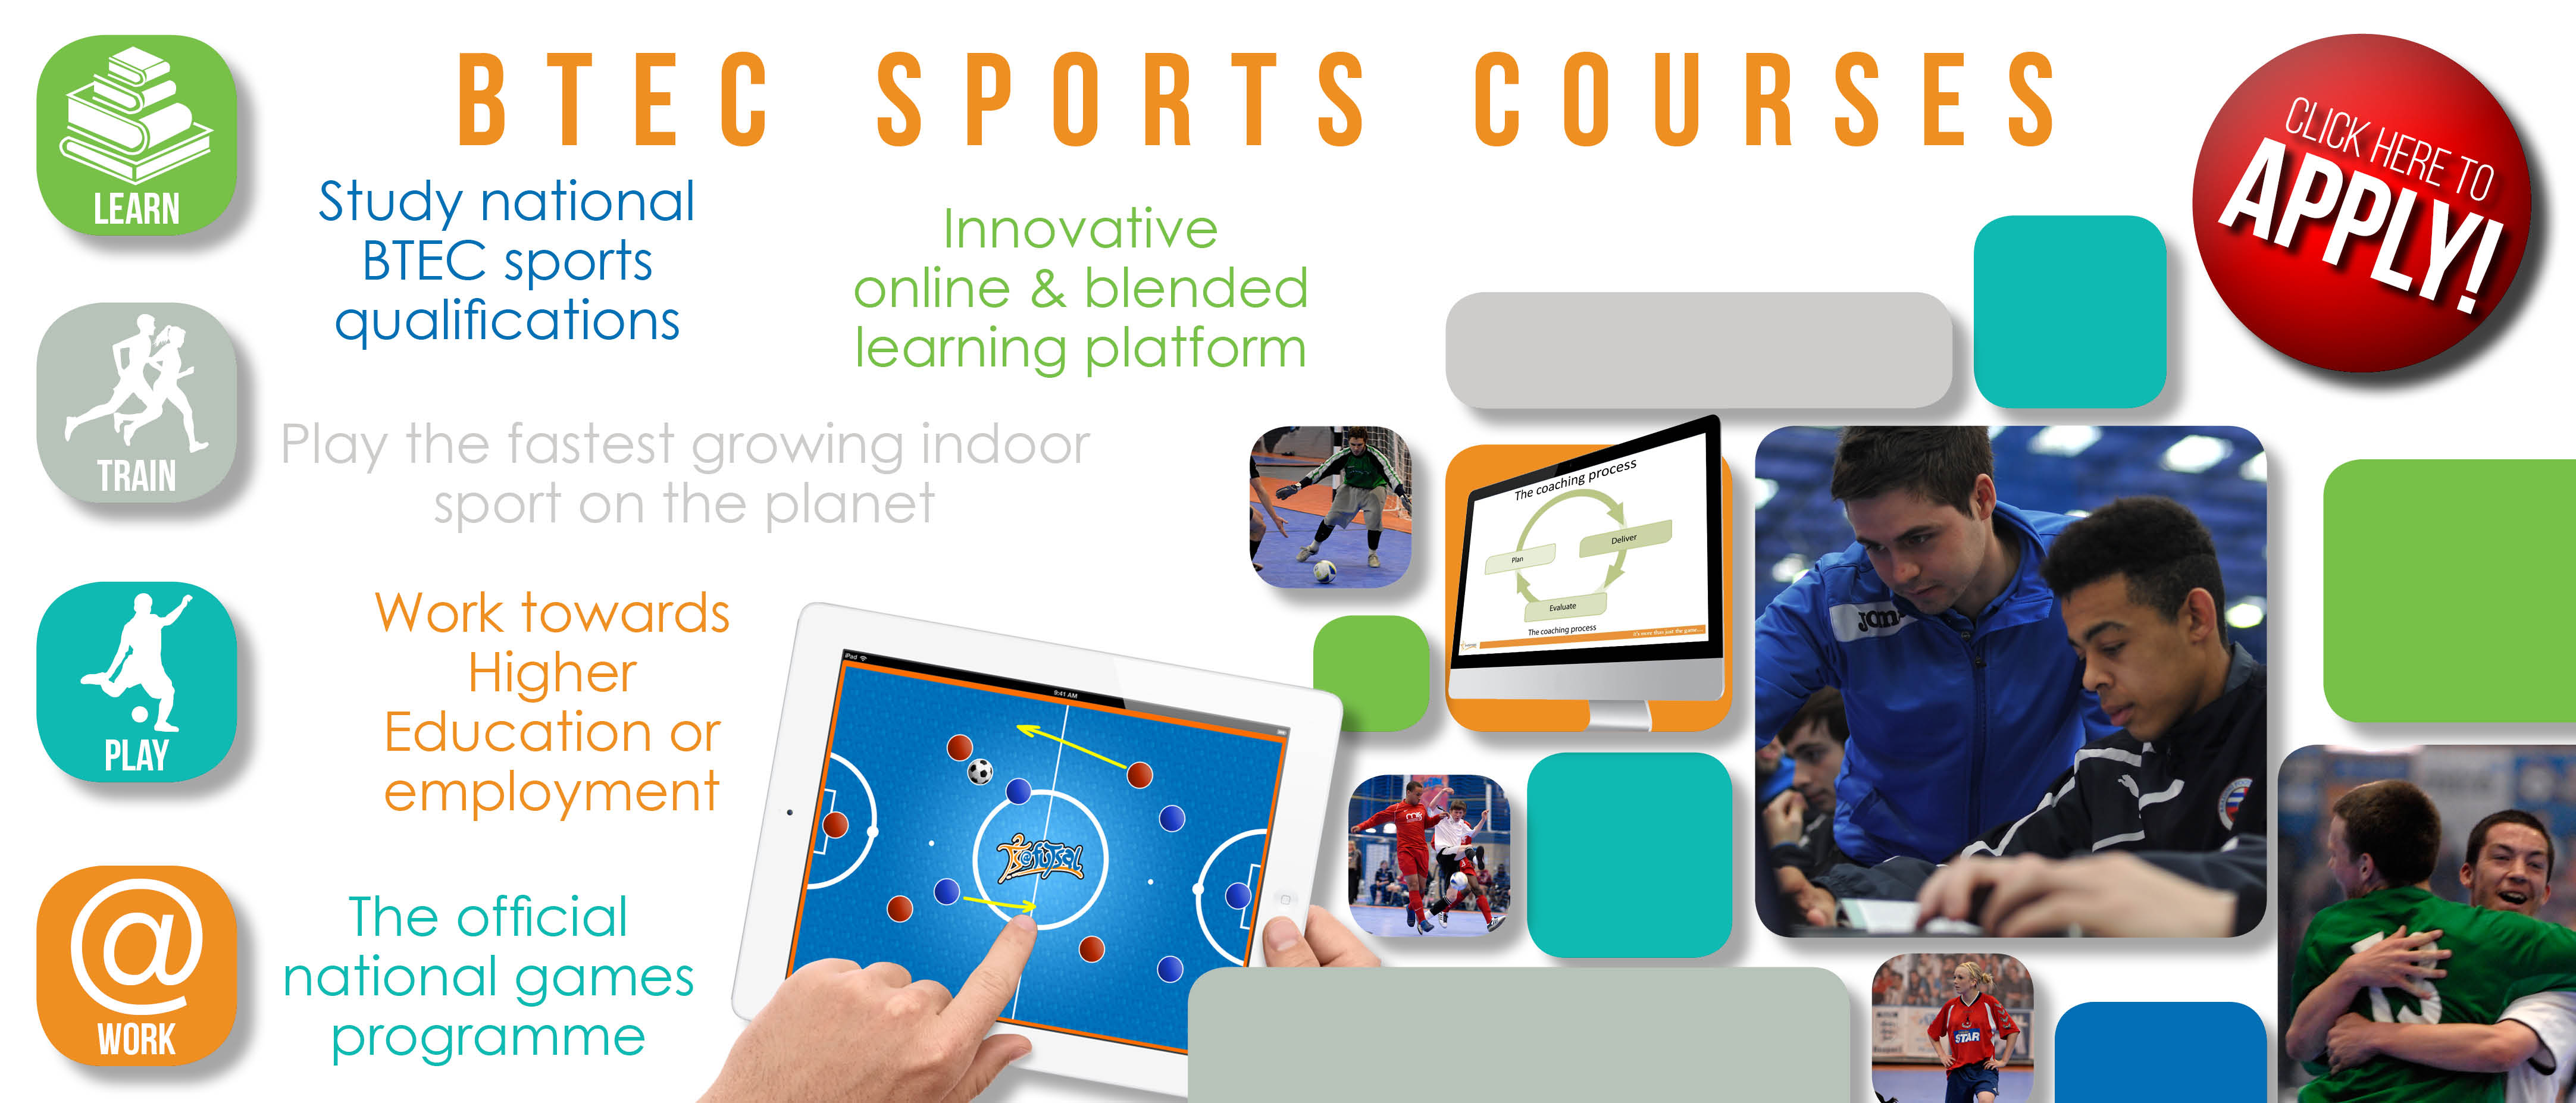 BTEC-sports-courses-ClickHere